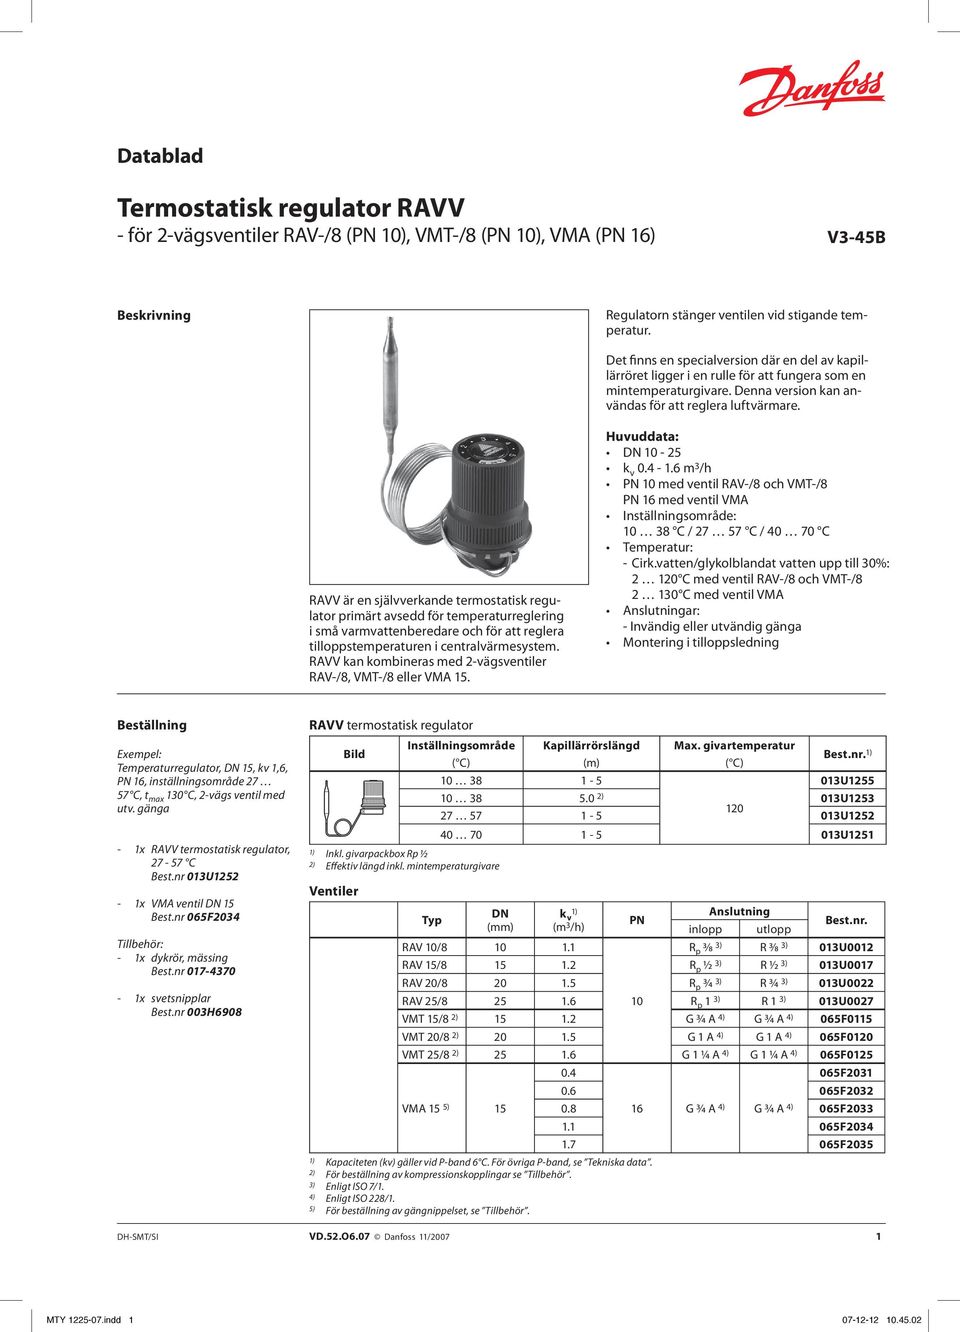 RAVV är en självverkande termostatisk regulator primärt avsedd för temperaturreglering i små varmvattenberedare och för att reglera tilloppstemperaturen i centralvärmesystem.